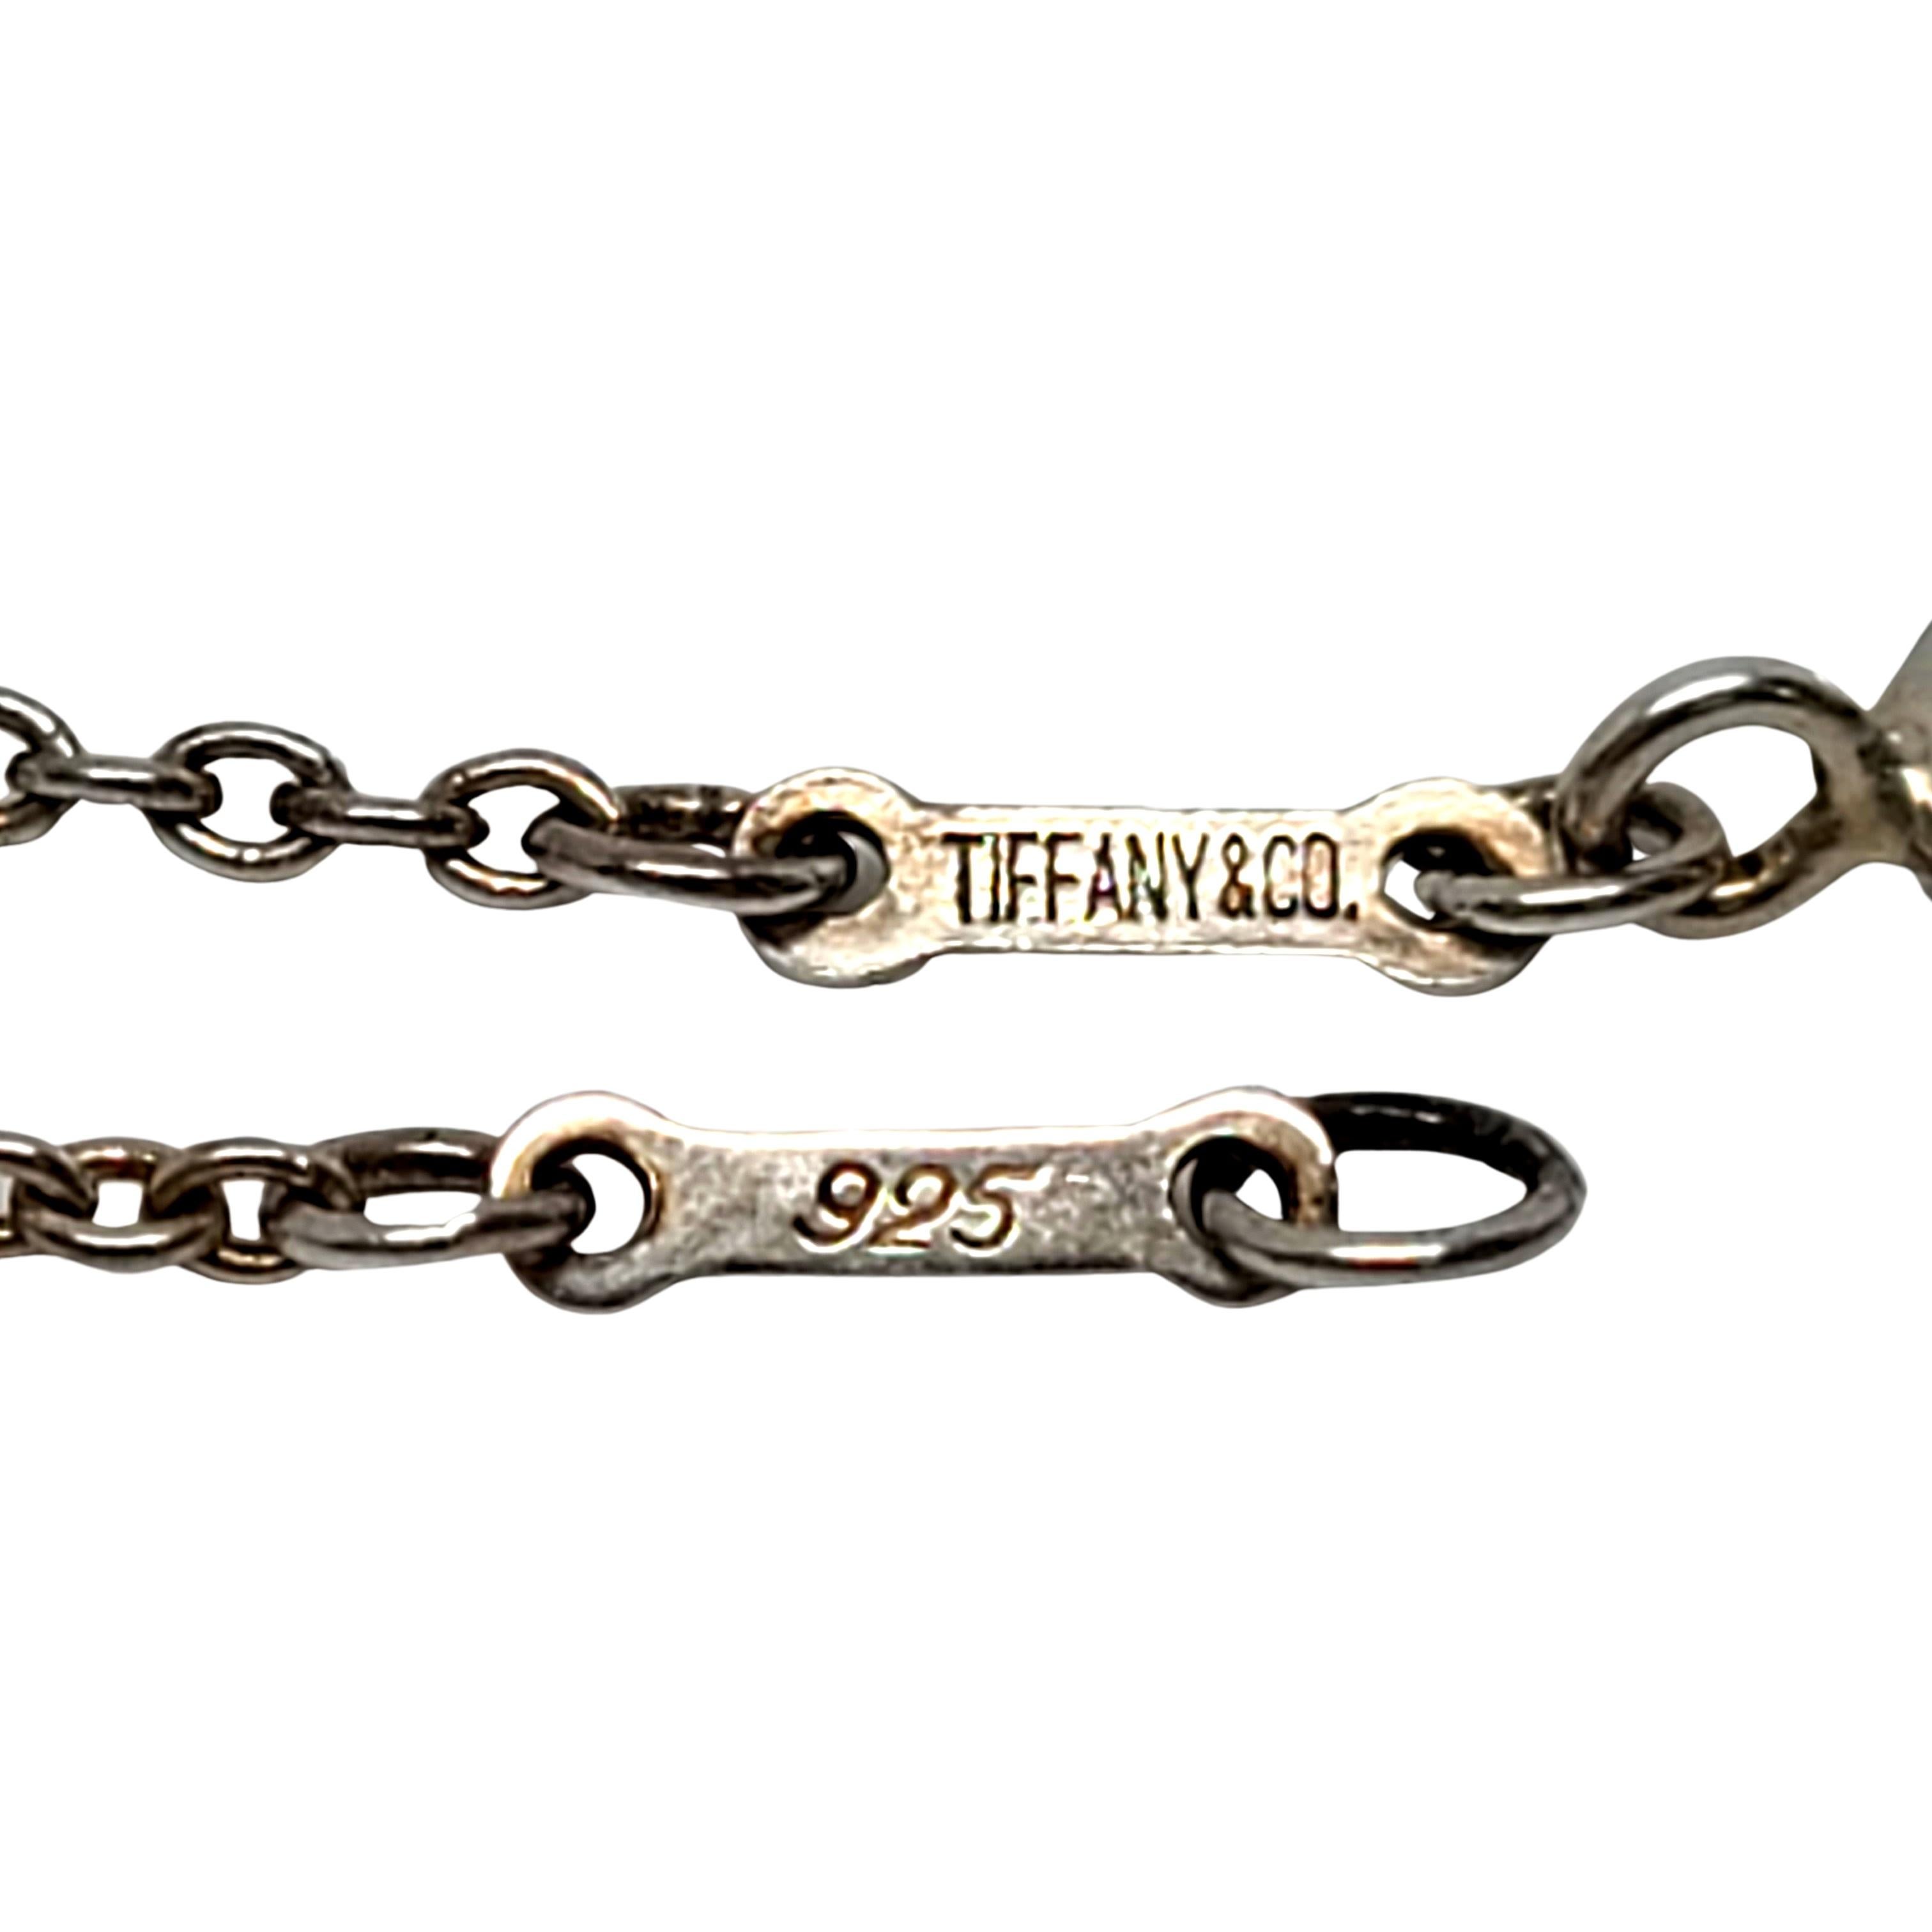 Tiffany & Co. Elsa Peretti Sterling Silver Open Heart Pendant w/Chain Necklace 2